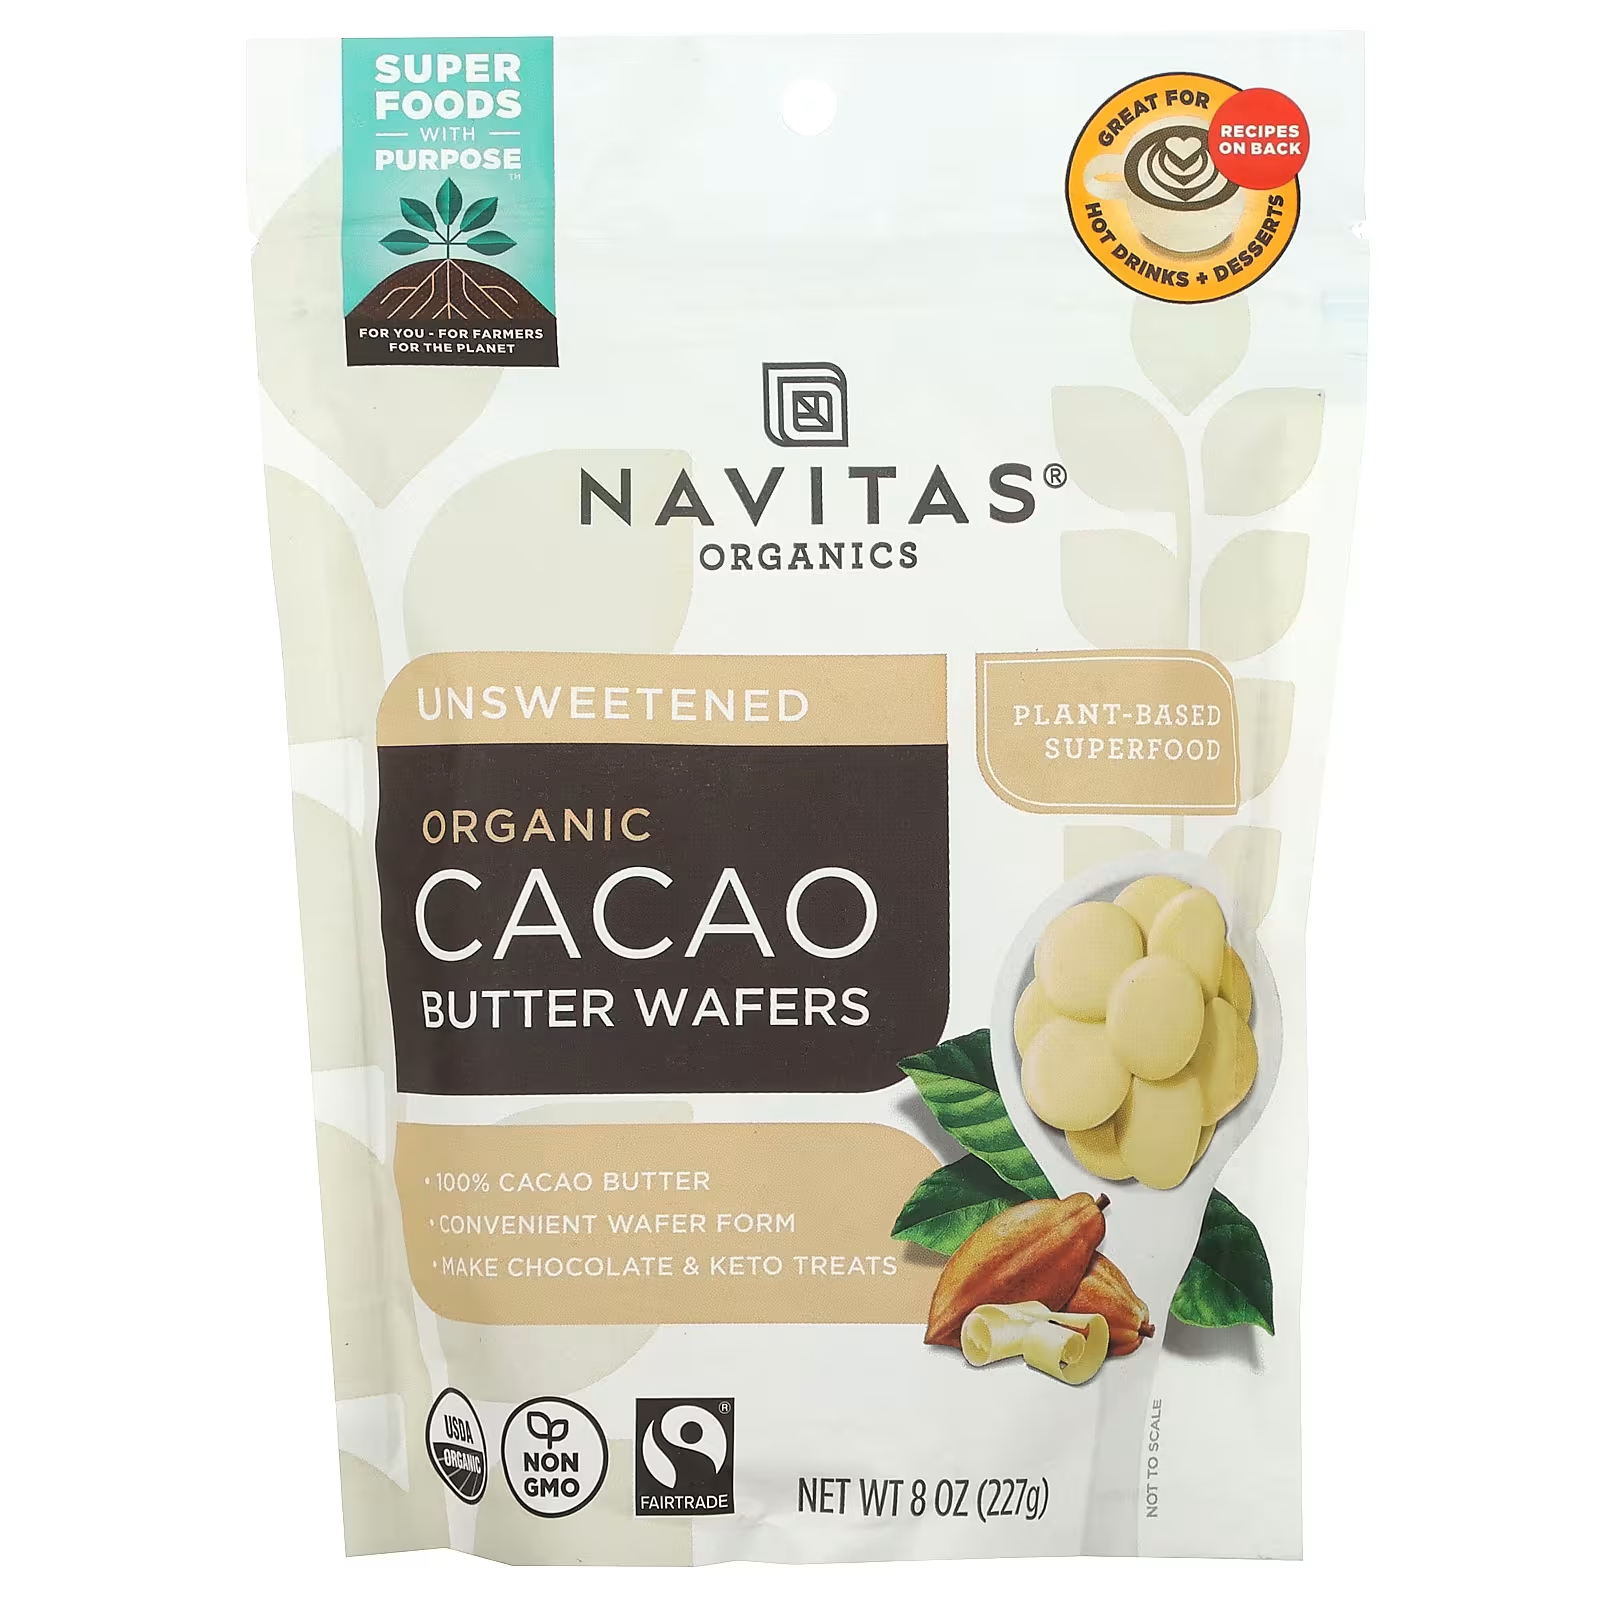 Navitas Organics Органические вафли с маслом какао, несладкие, 8 унций (227 г) navitas organics дробленые органические какао бобы 227 г 8 унций